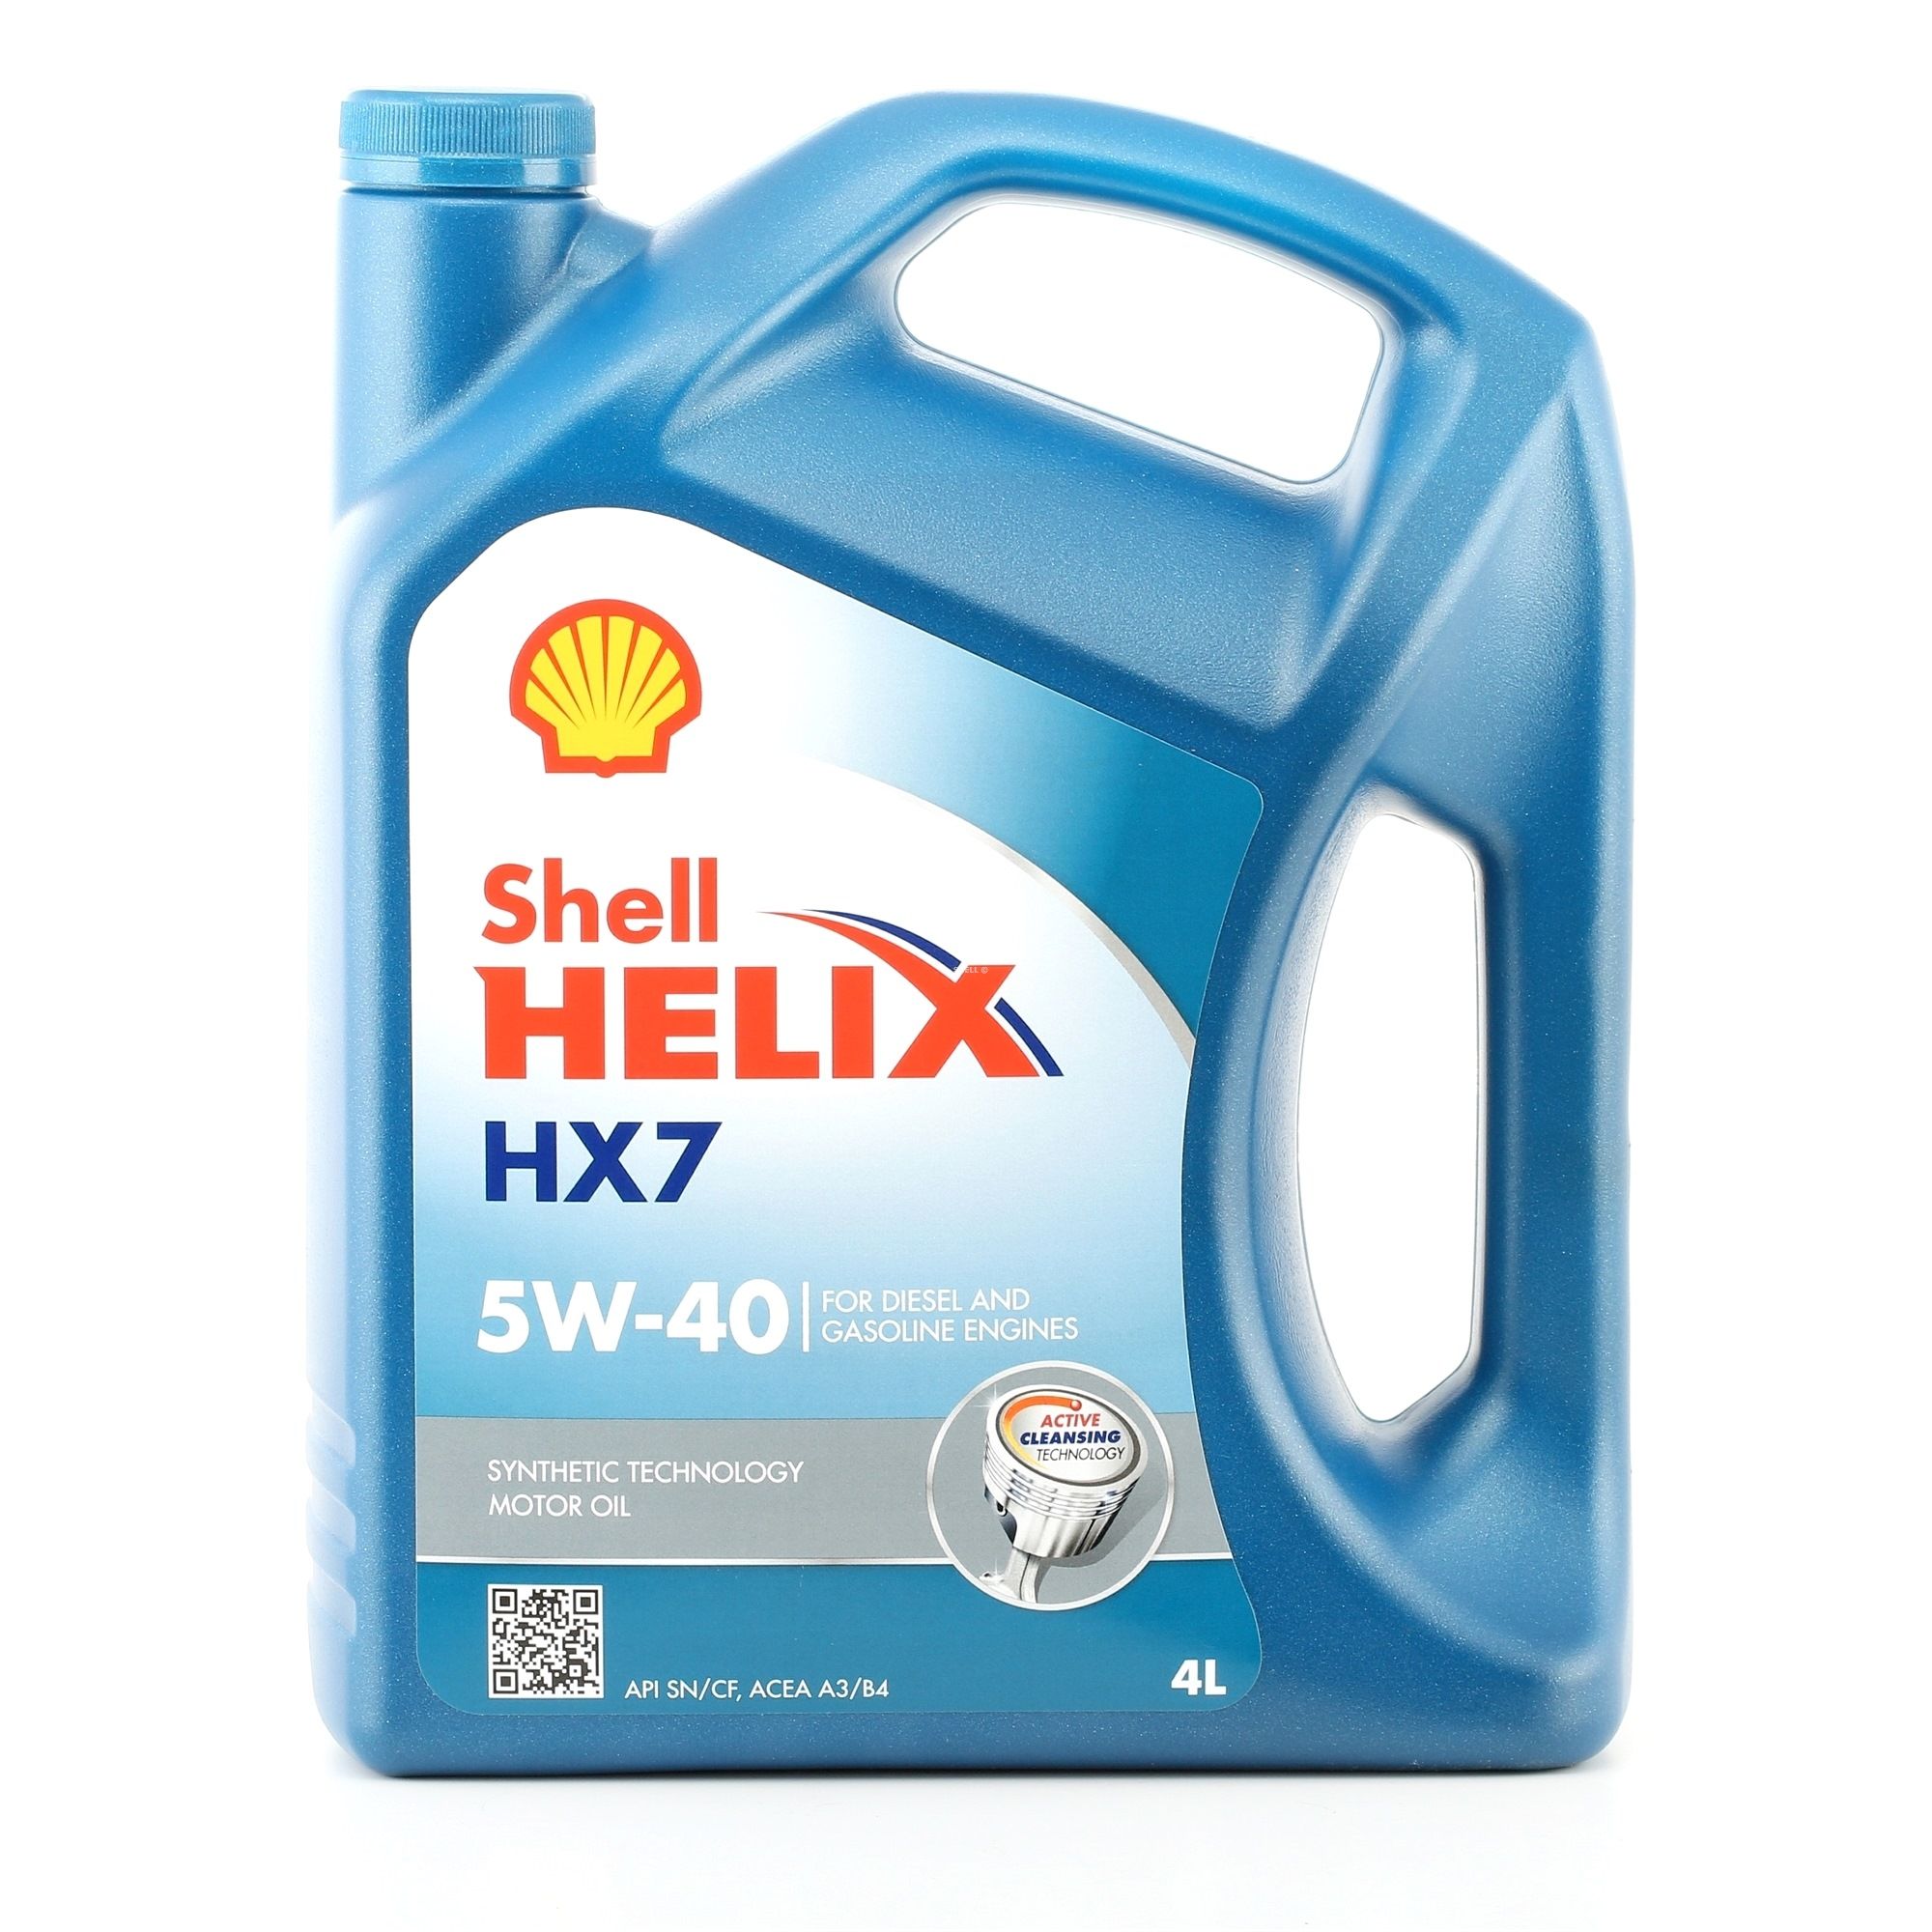 SHELL Helix HX7 550046284 PEUGEOT Motorenöl Kosten und Erfahrung